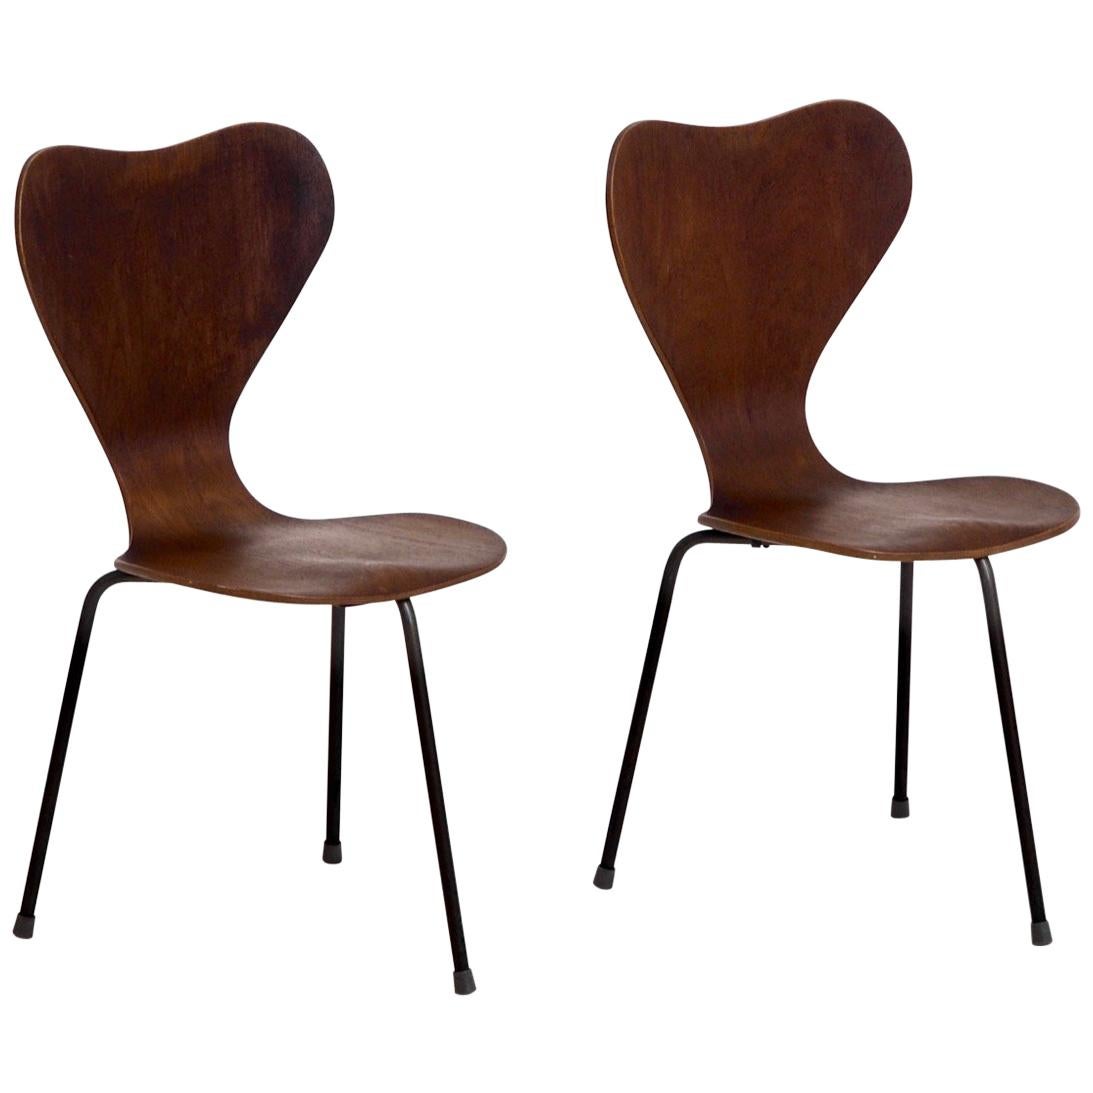 Pair of Teak Wood Chairs with Three Iron Legs, Danish Architect, 1960s